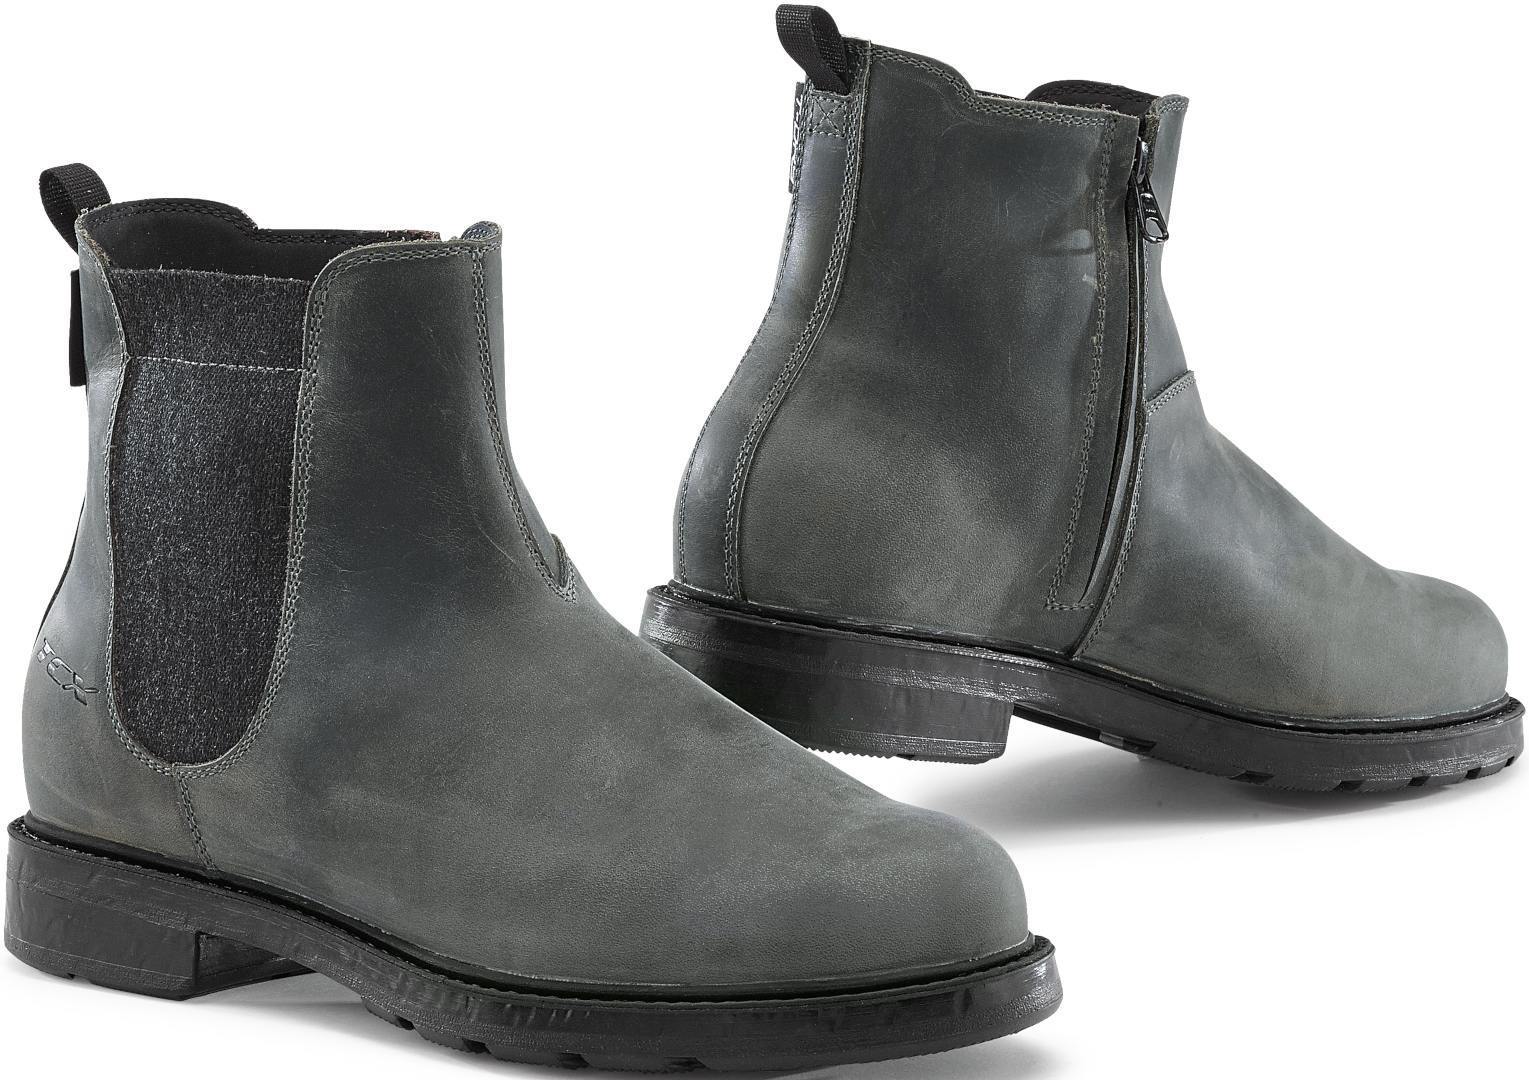 TCX Staten Zapatos de moto impermeables - Negro Gris (44)